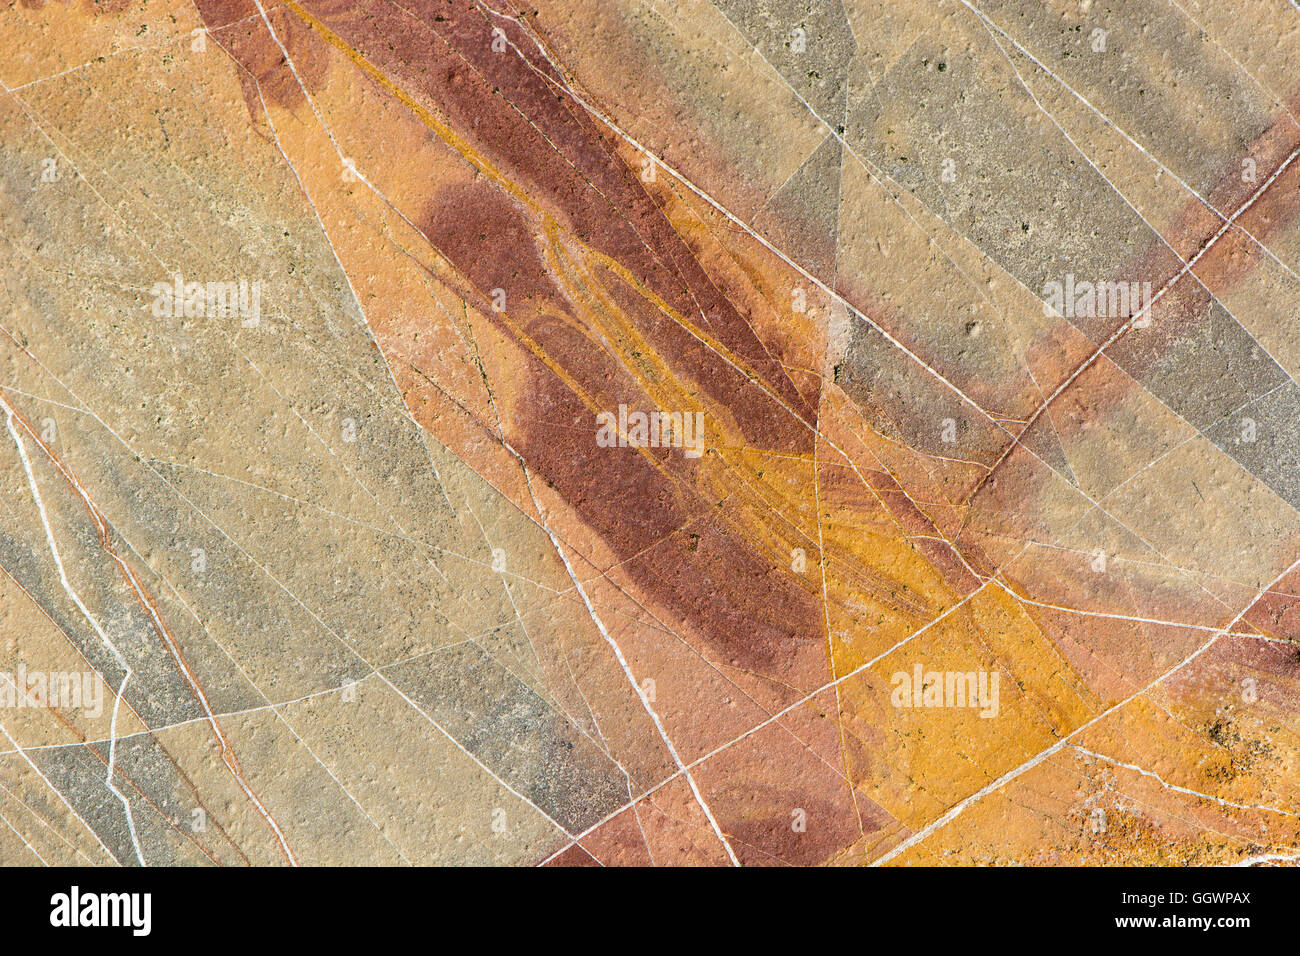 Jaune et rouge fond de roche sédimentaire. Les fissures et les caractéristiques géologiques colorées en grès sur la côte ouest de l'Angleterre Banque D'Images